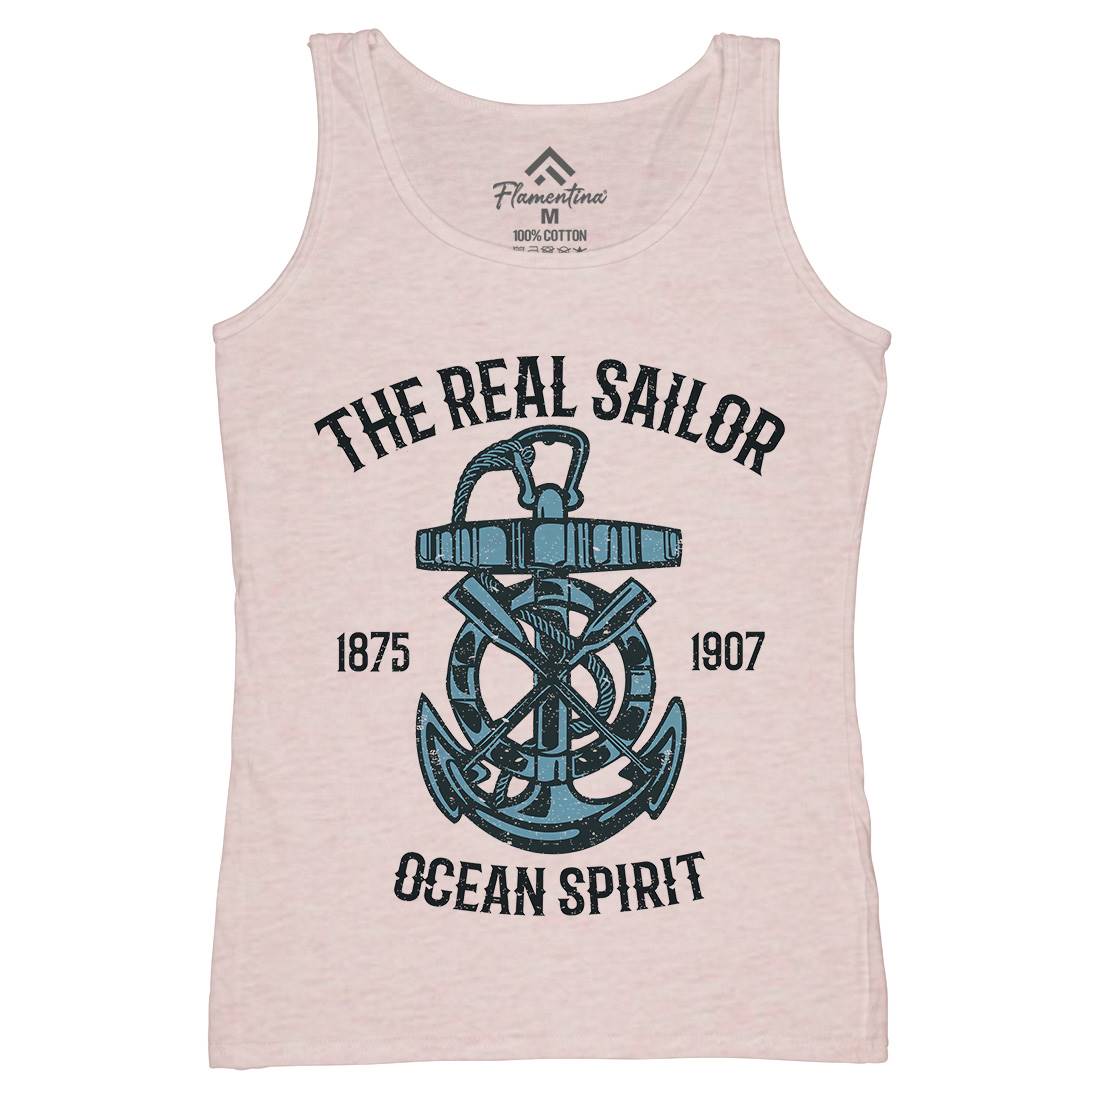 Ocean Spirit Womens Organic Tank Top Vest Navy A097